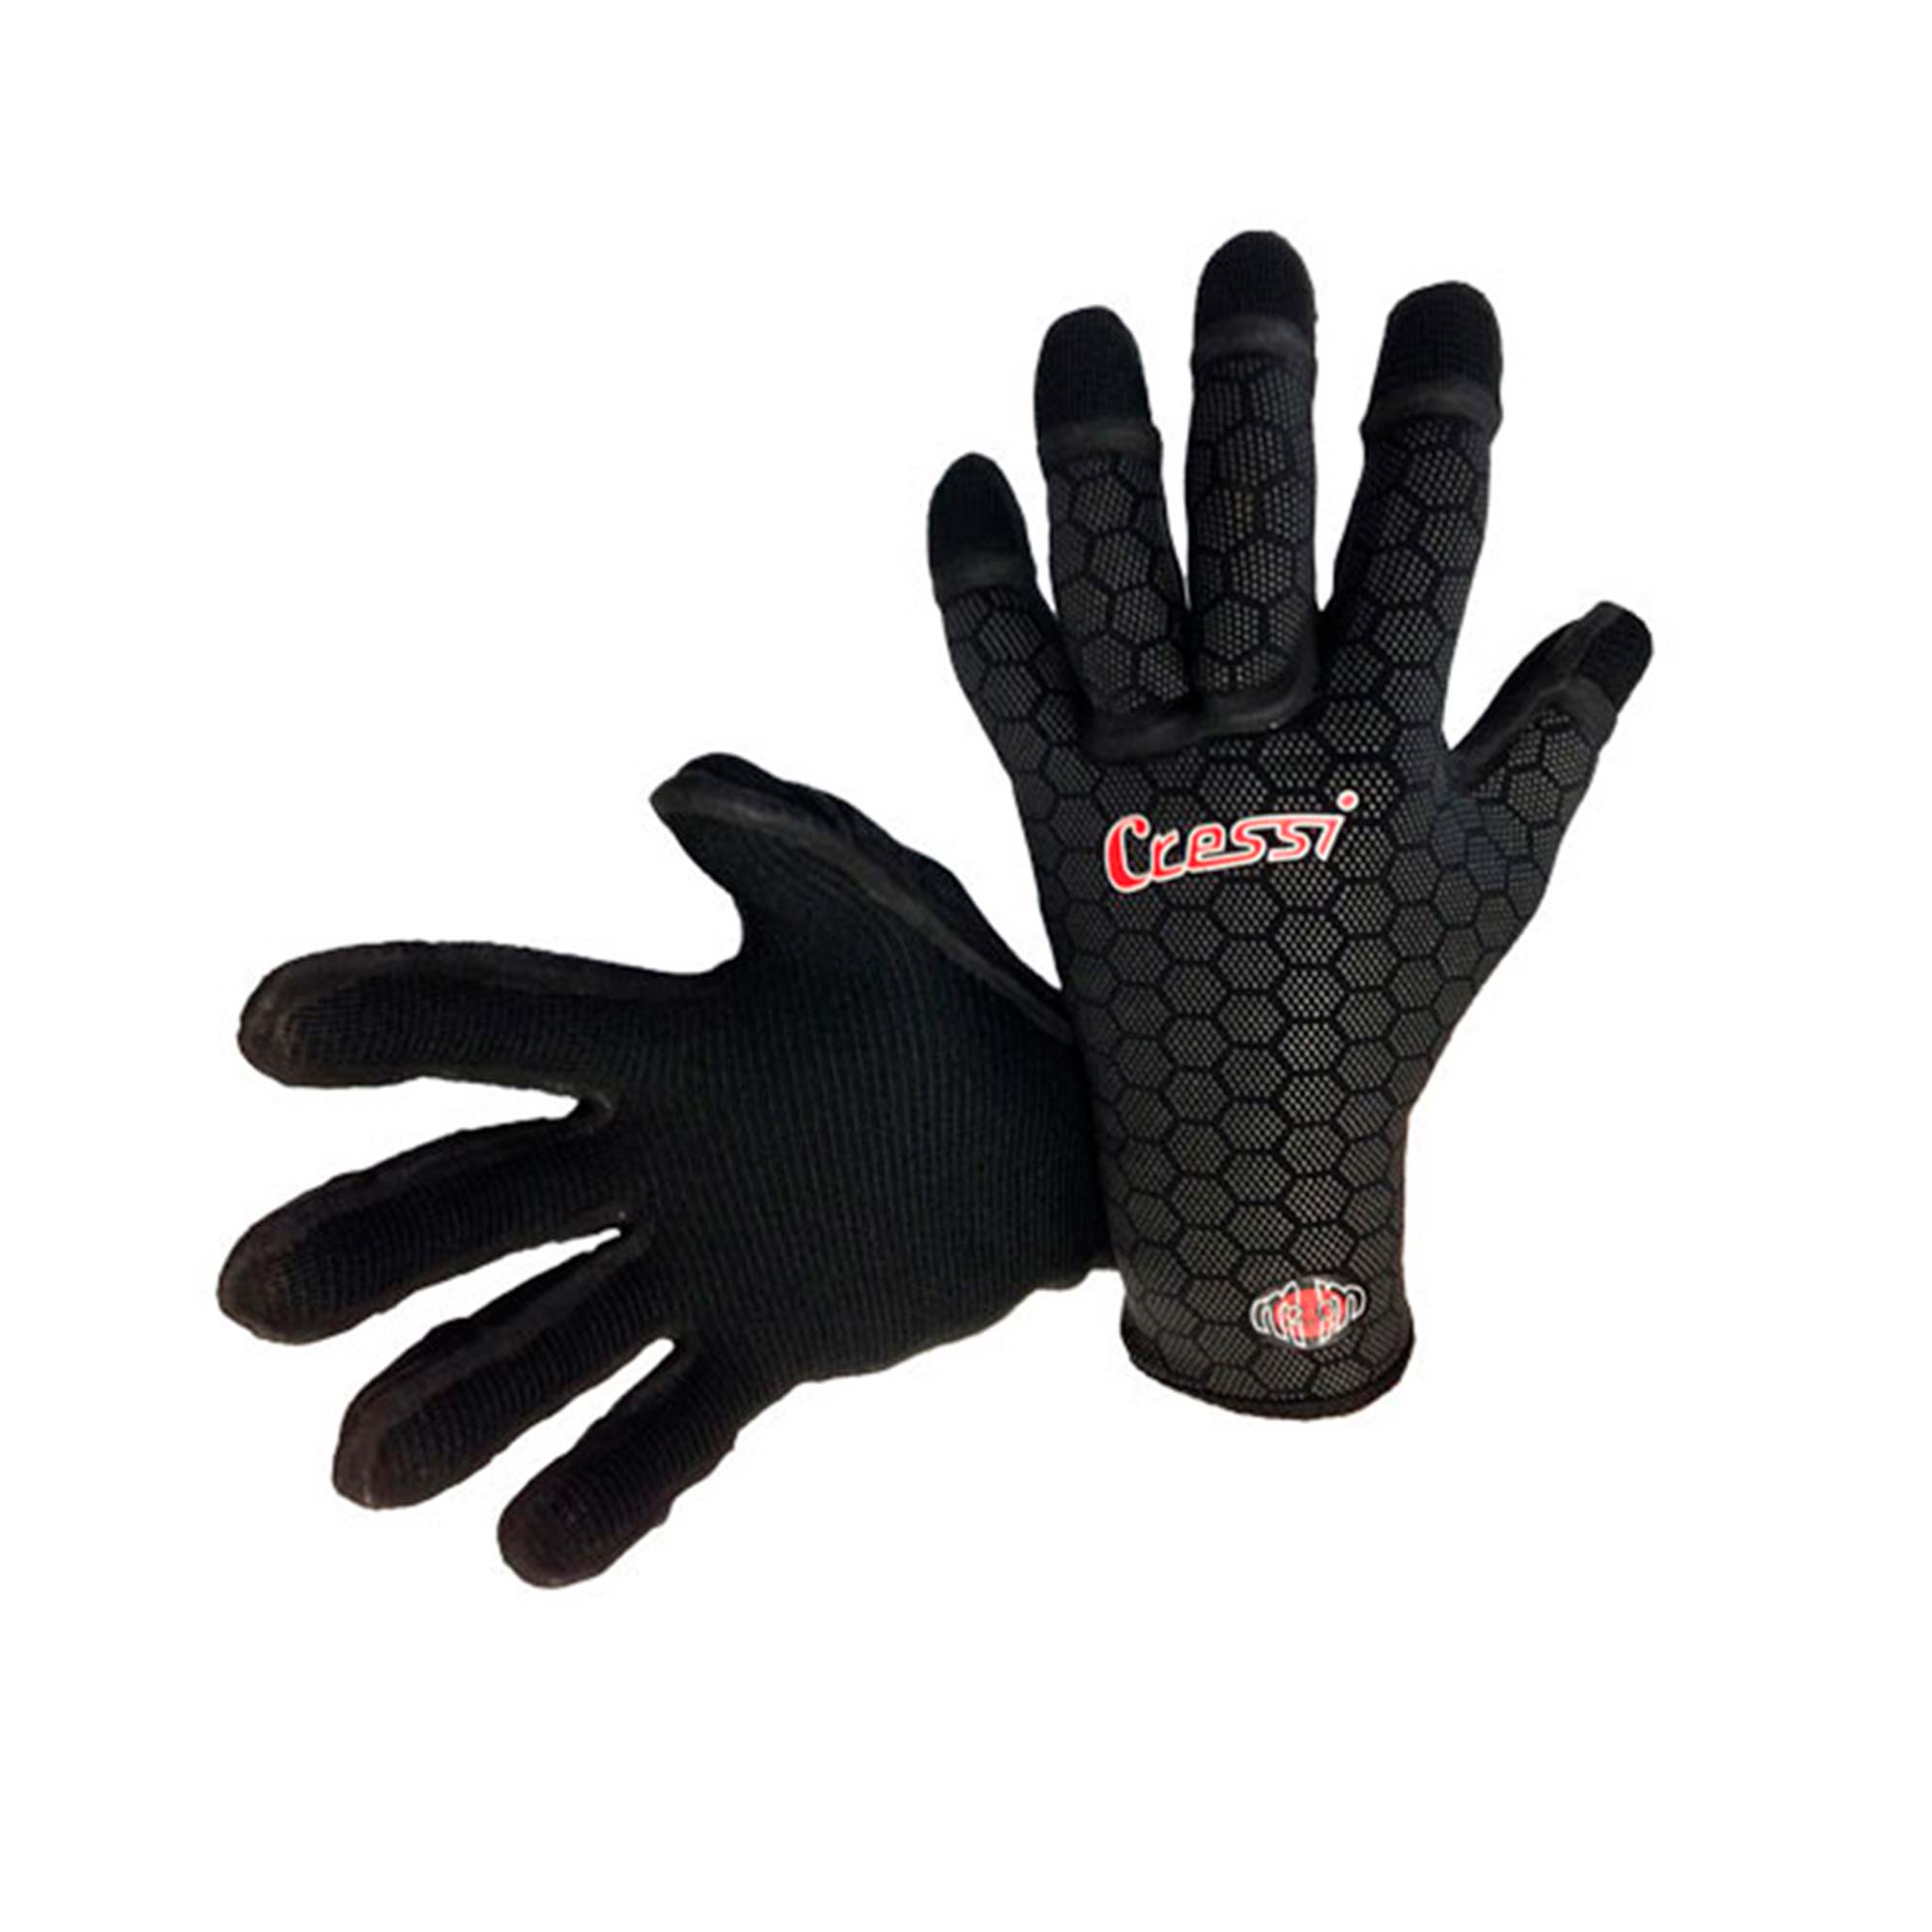 Cressi 3mm Spider Glove